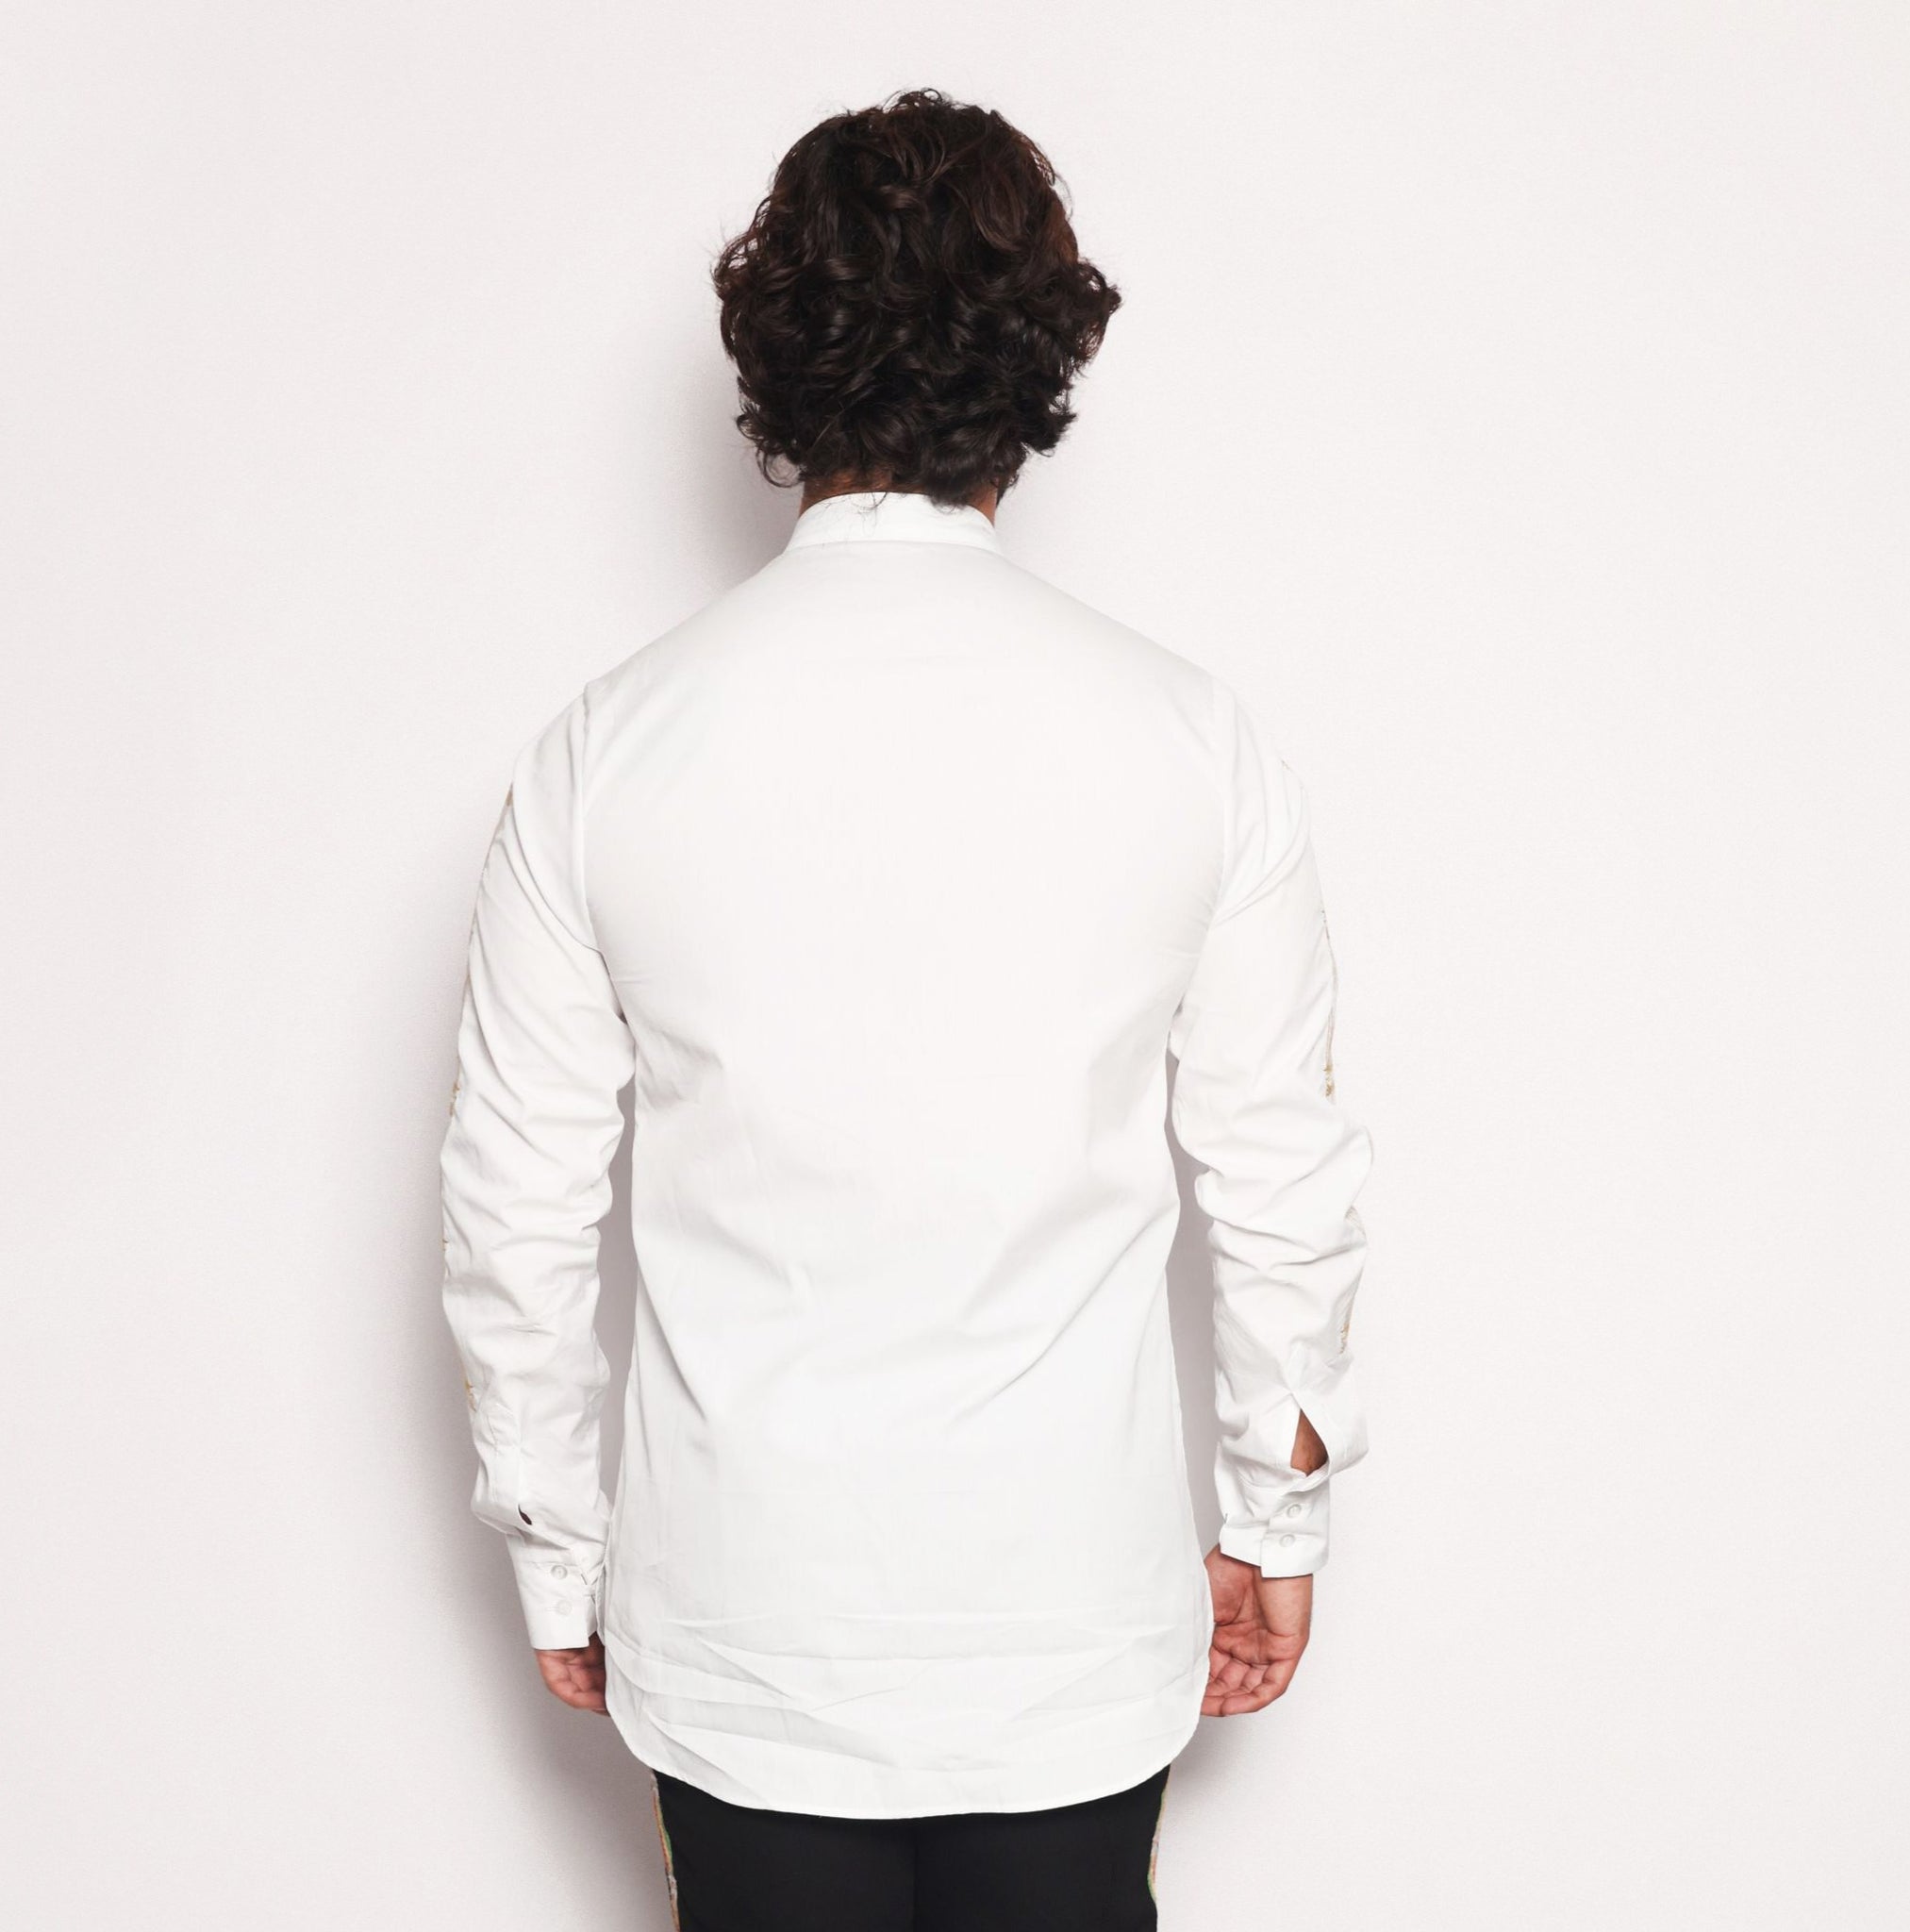 Tunic White Shirt